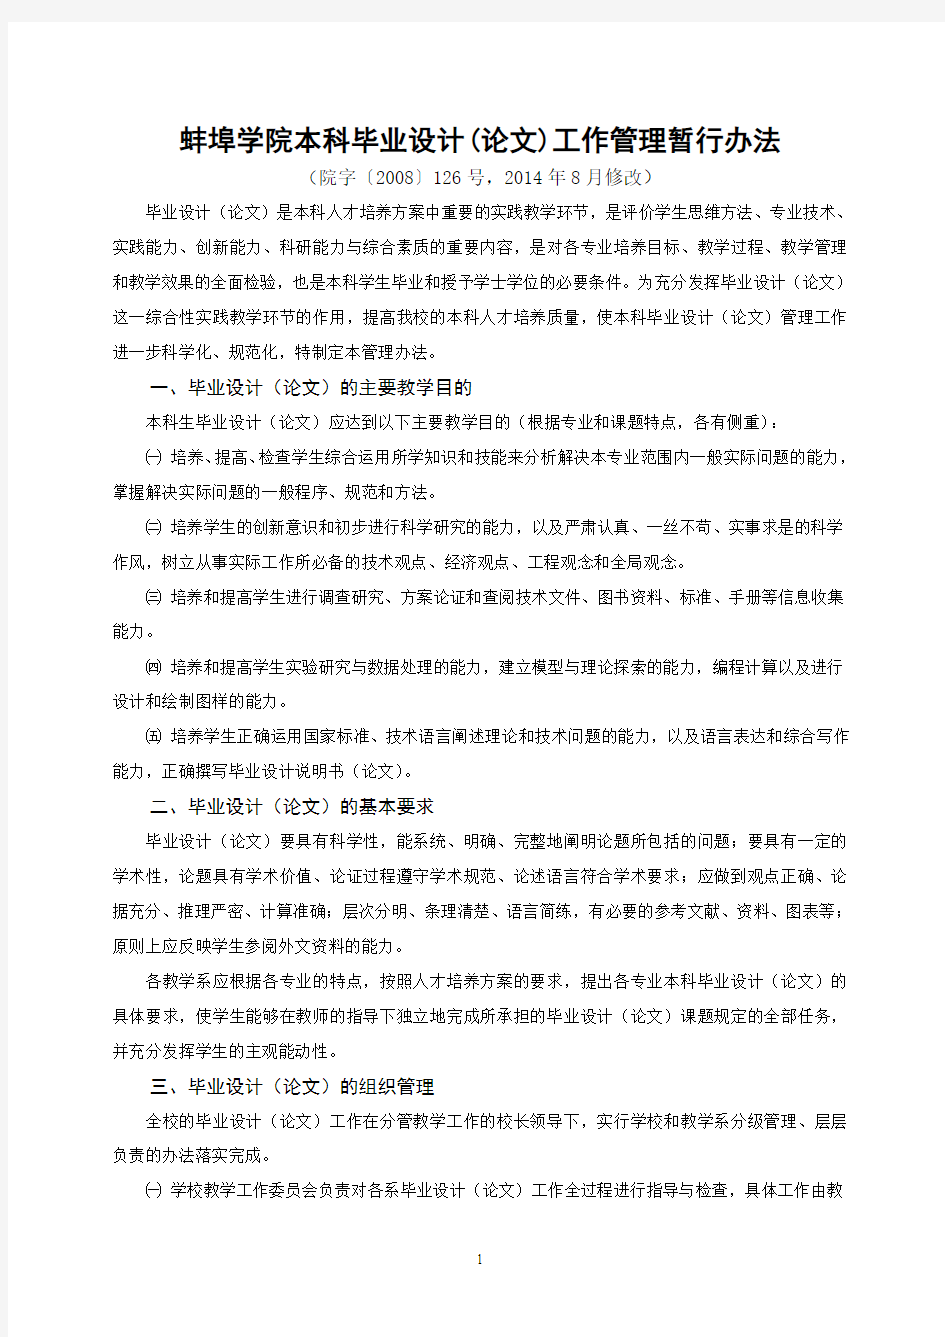 蚌埠学院本科毕业设计(论文)管理暂行办法(2014修订版)